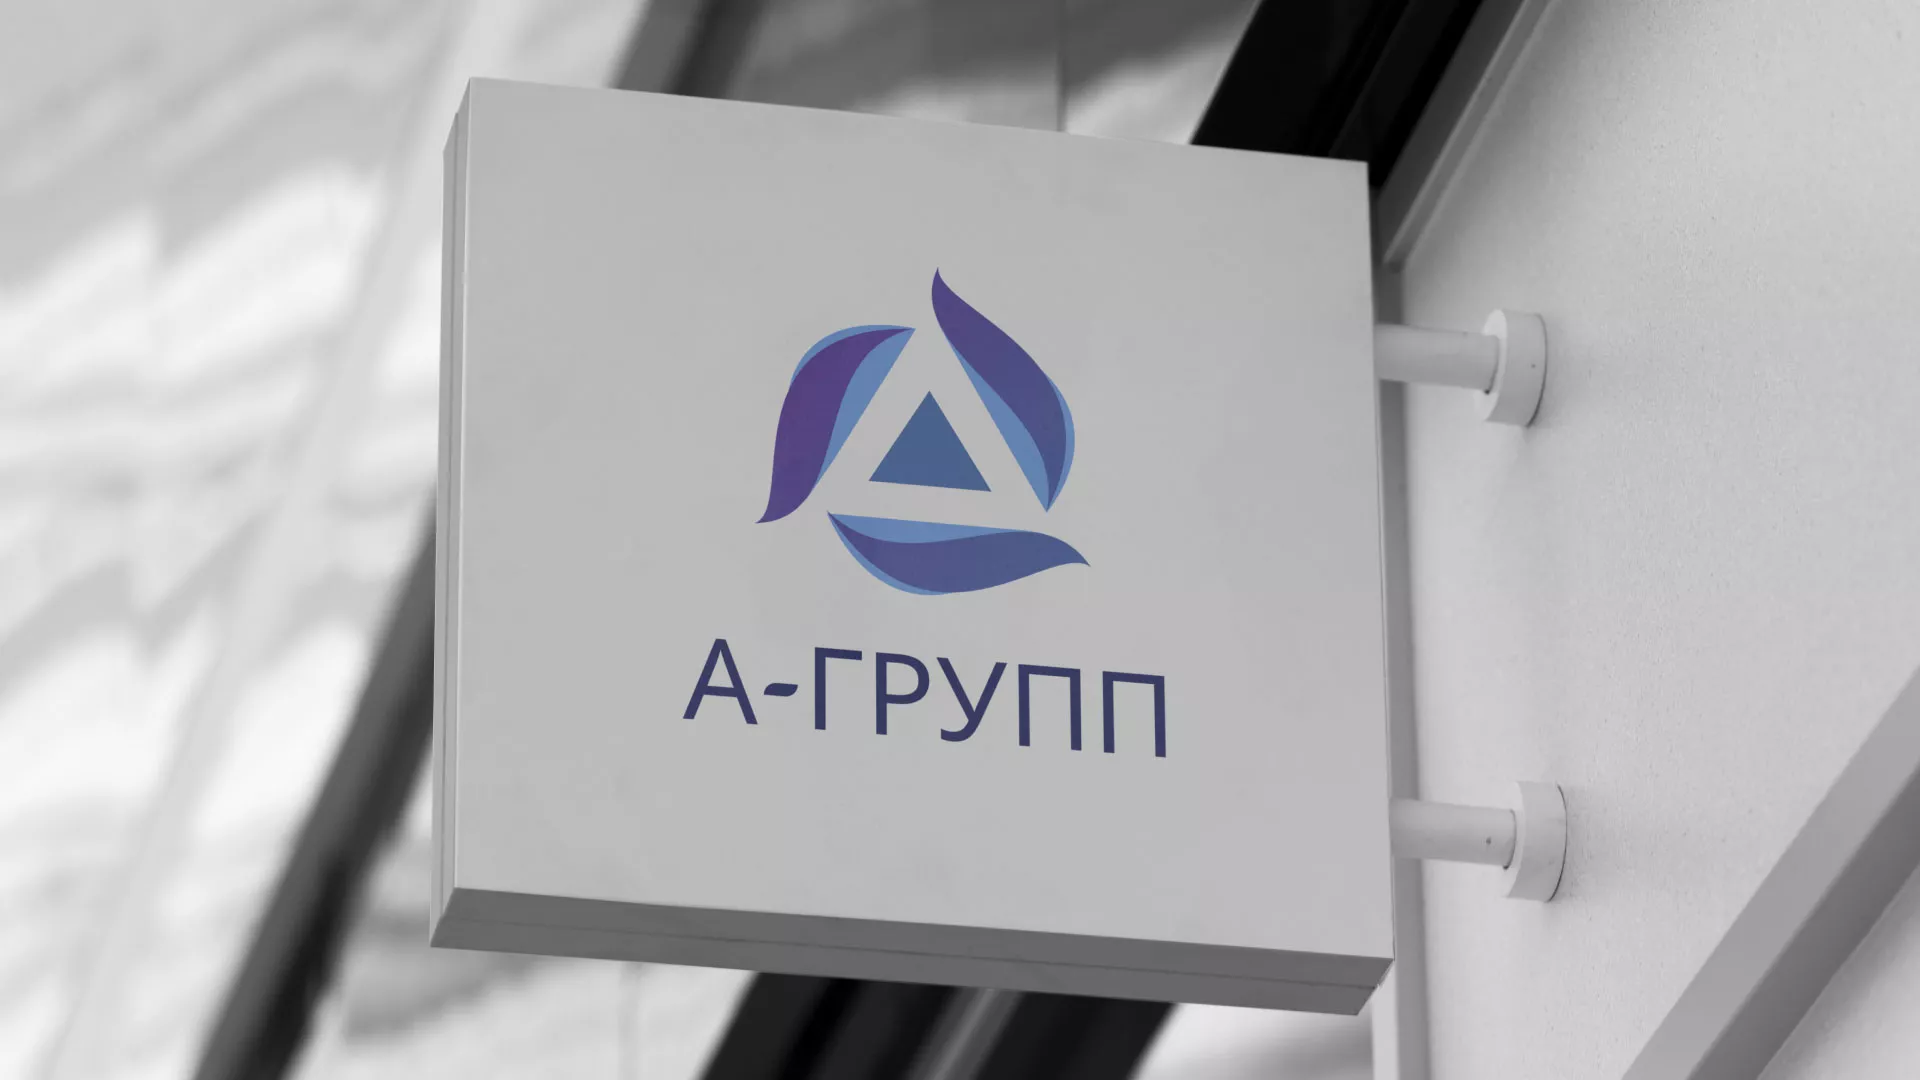 Создание логотипа компании «А-ГРУПП» в Макушино